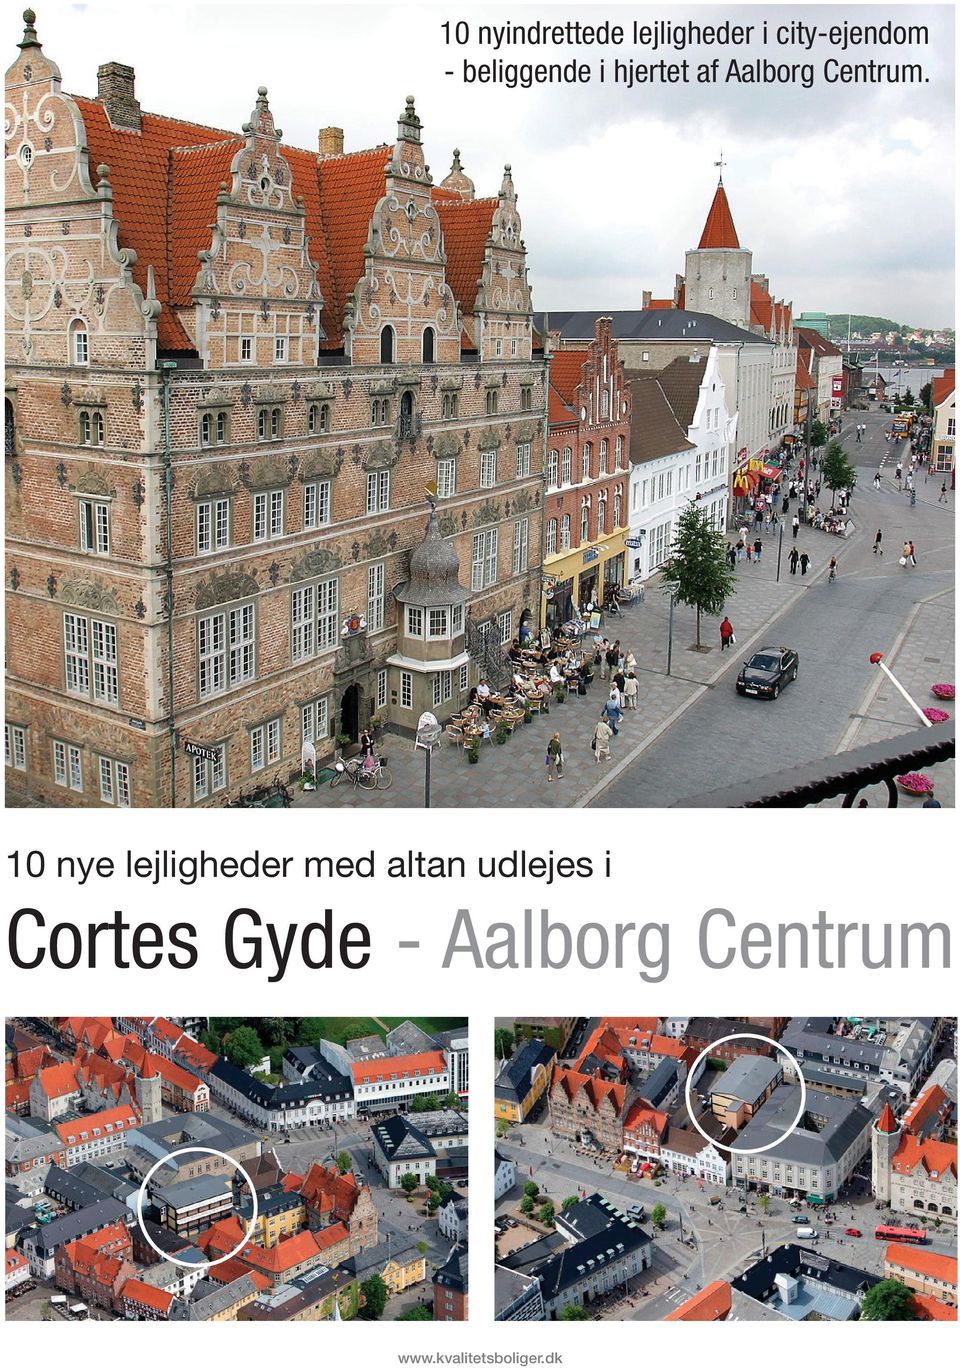 Aalborg Centrum.